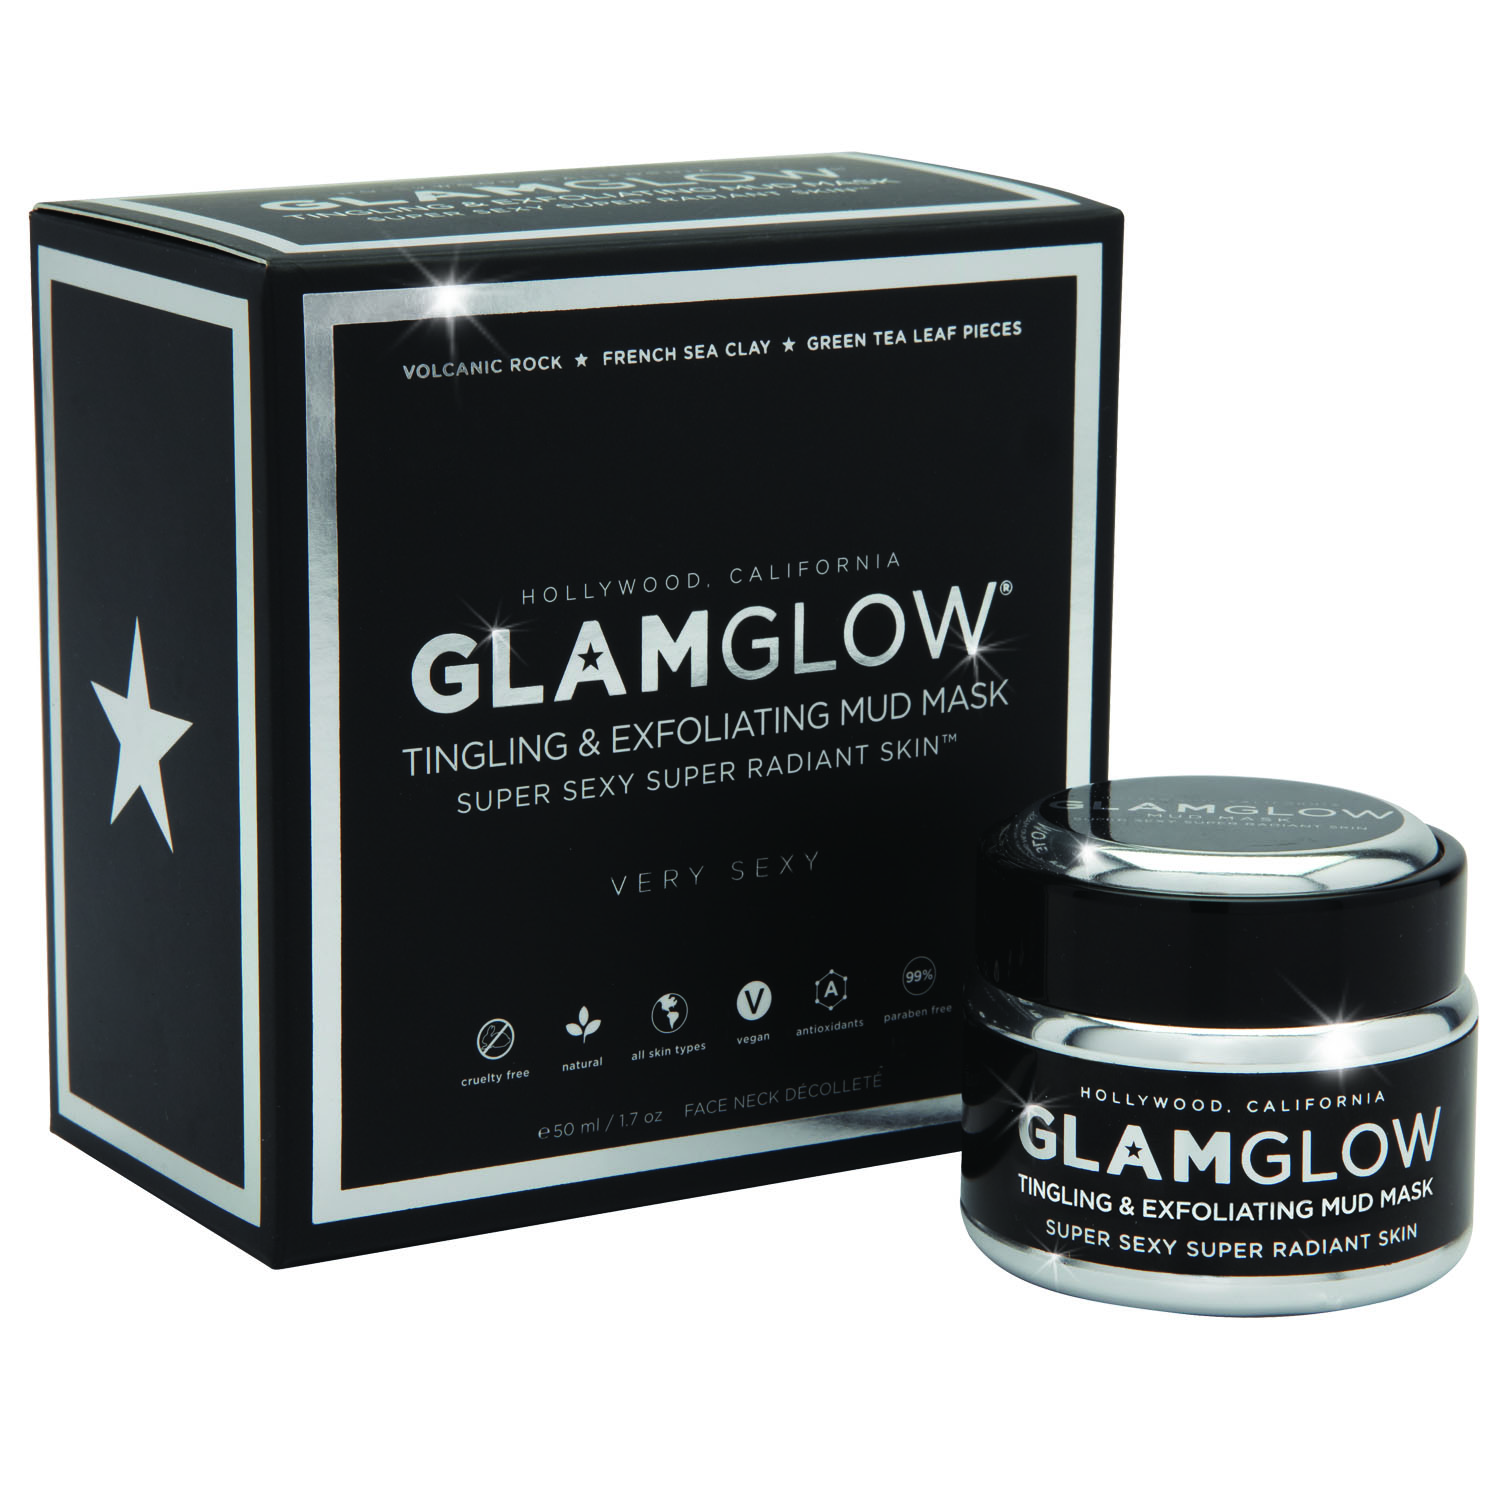 Detoxify & Glow Your Skin  With GlamGlow Mud